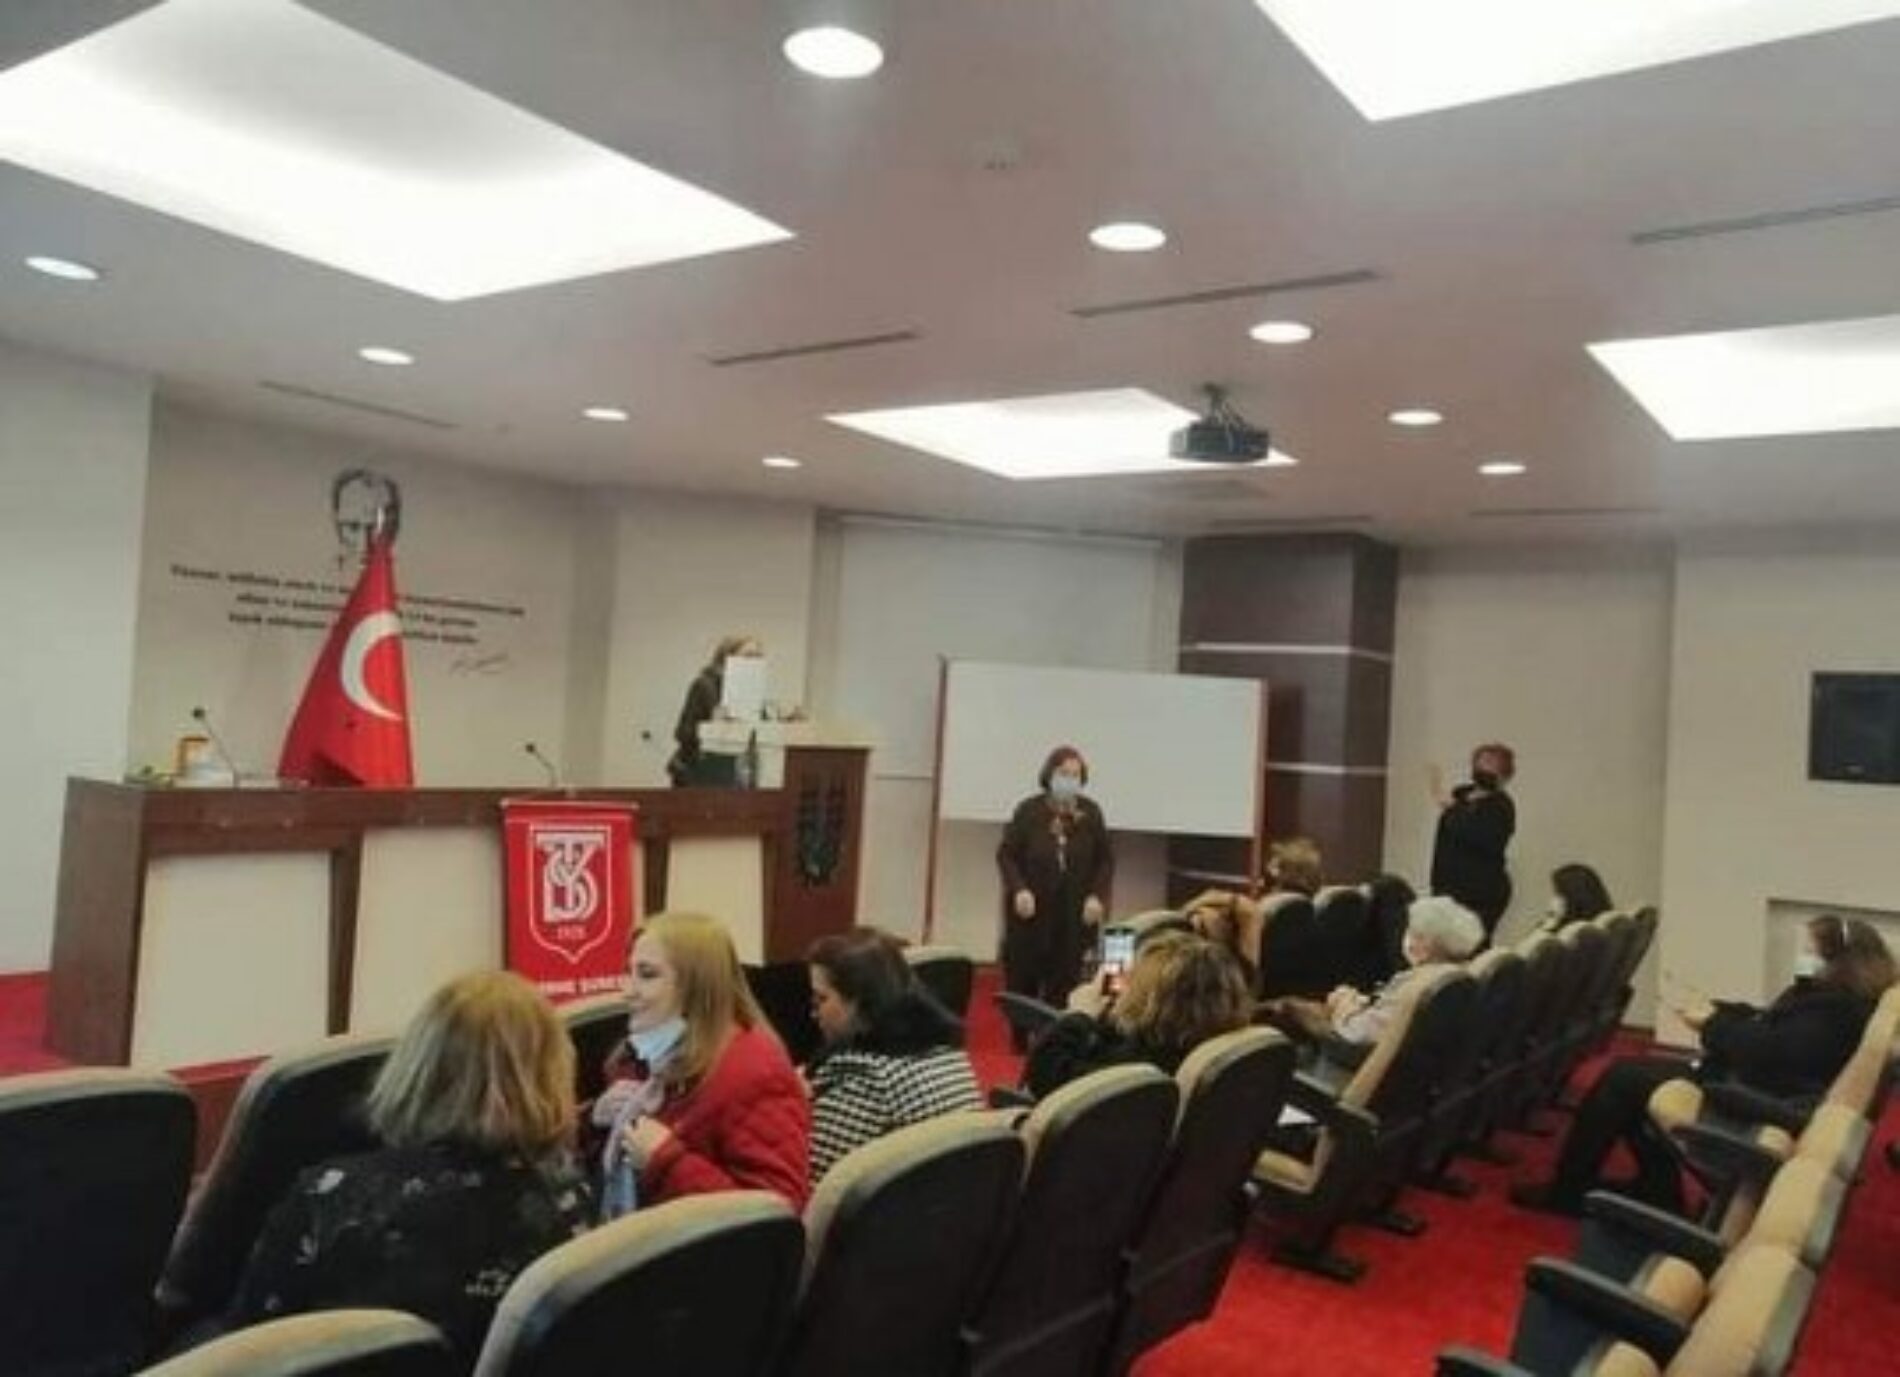 TYSD Edirne Şubemiz Olağan Genel Kurulunu Başarıyla Gerçekleştirmiştir